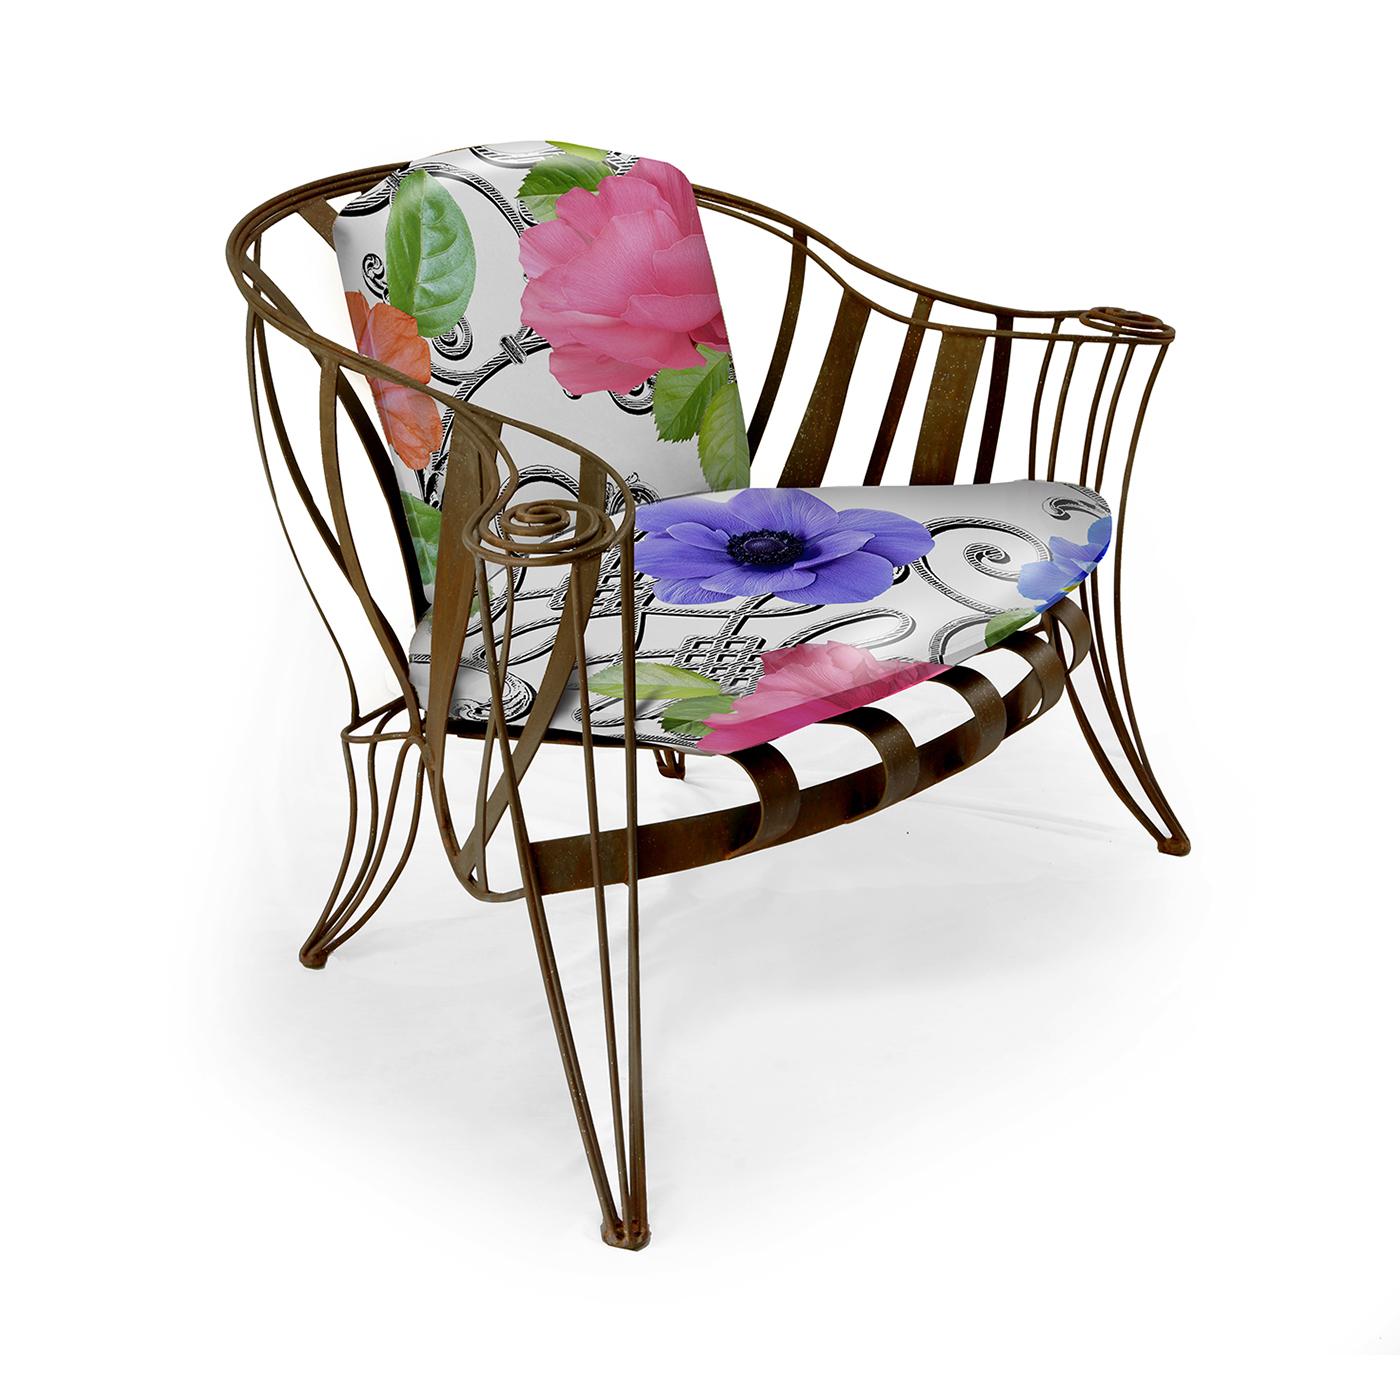 Whiting, l'opulent fauteuil Opus Garden White Flower, une pièce de design de Carlo Rampazzi. Cette pièce extraordinaire est dotée d'un cadre en fer courbé à la main, méticuleusement traité contre la rouille. Pour améliorer le confort, le canapé est